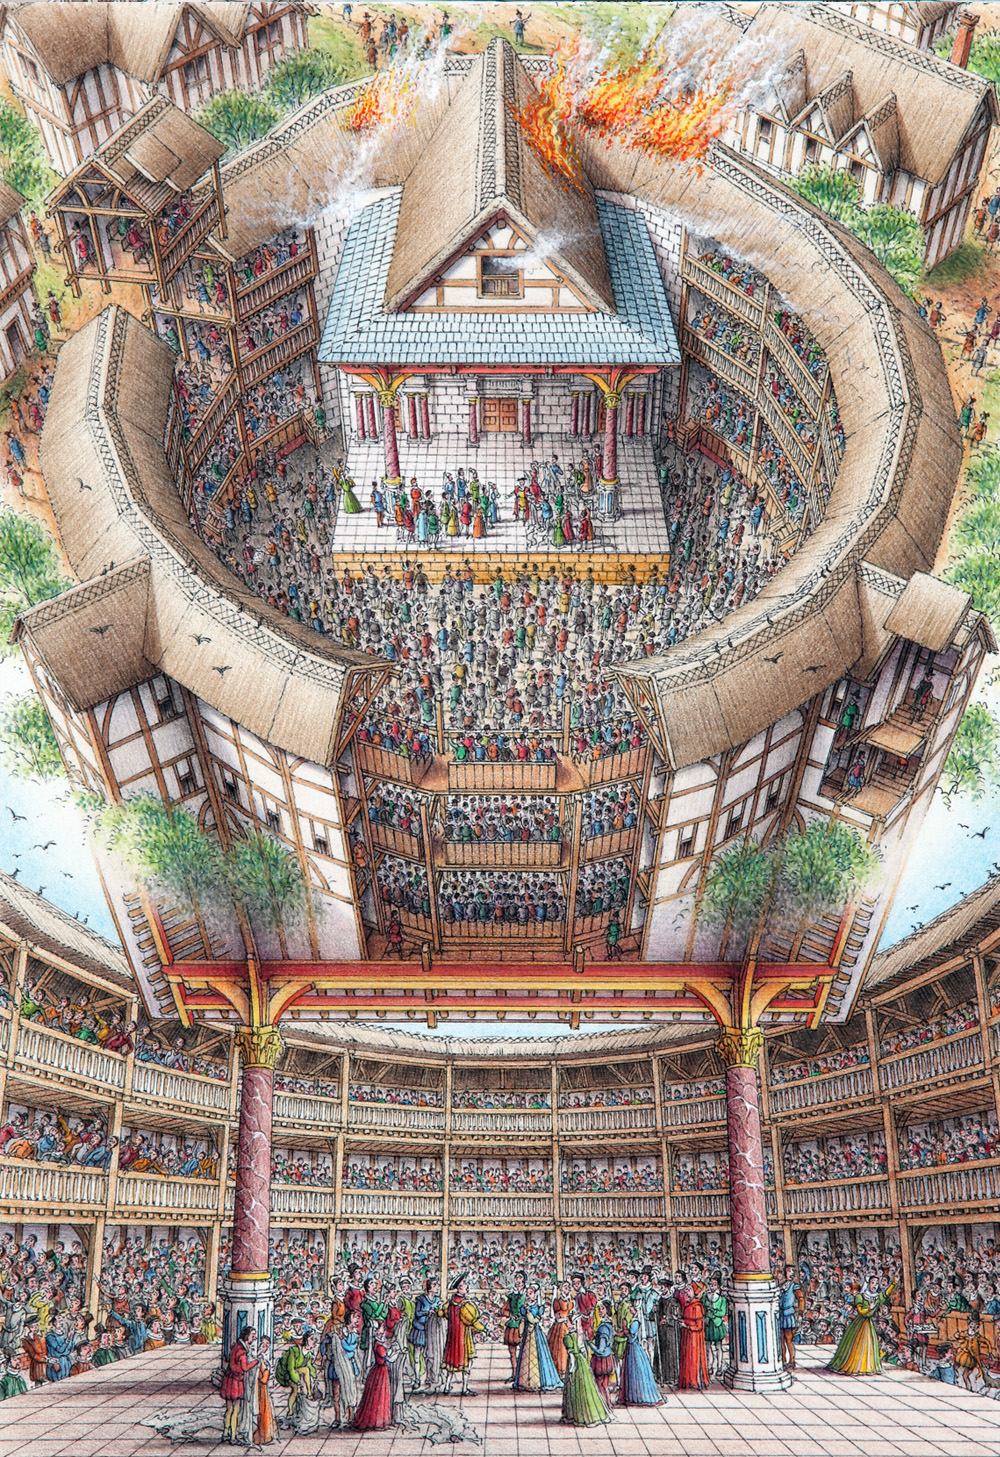 莎士比亚的环球剧院(globe theatre)